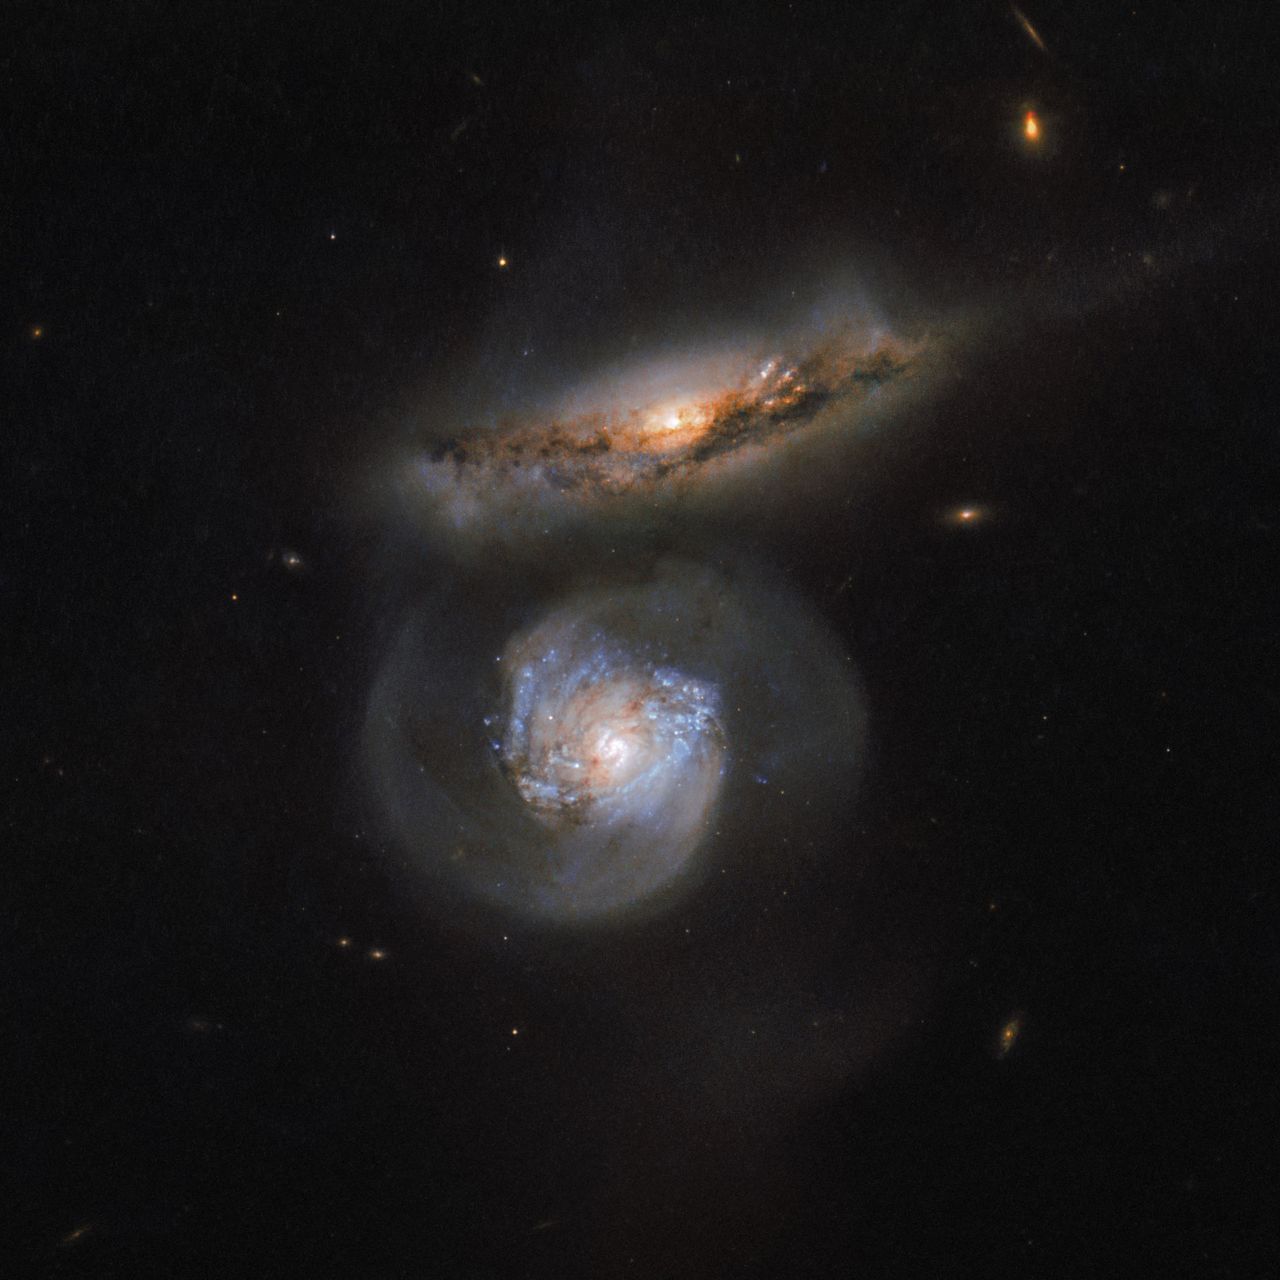 Piękne zdjęcie dwóch galaktyk wykonane Teleskopem Hubble'a